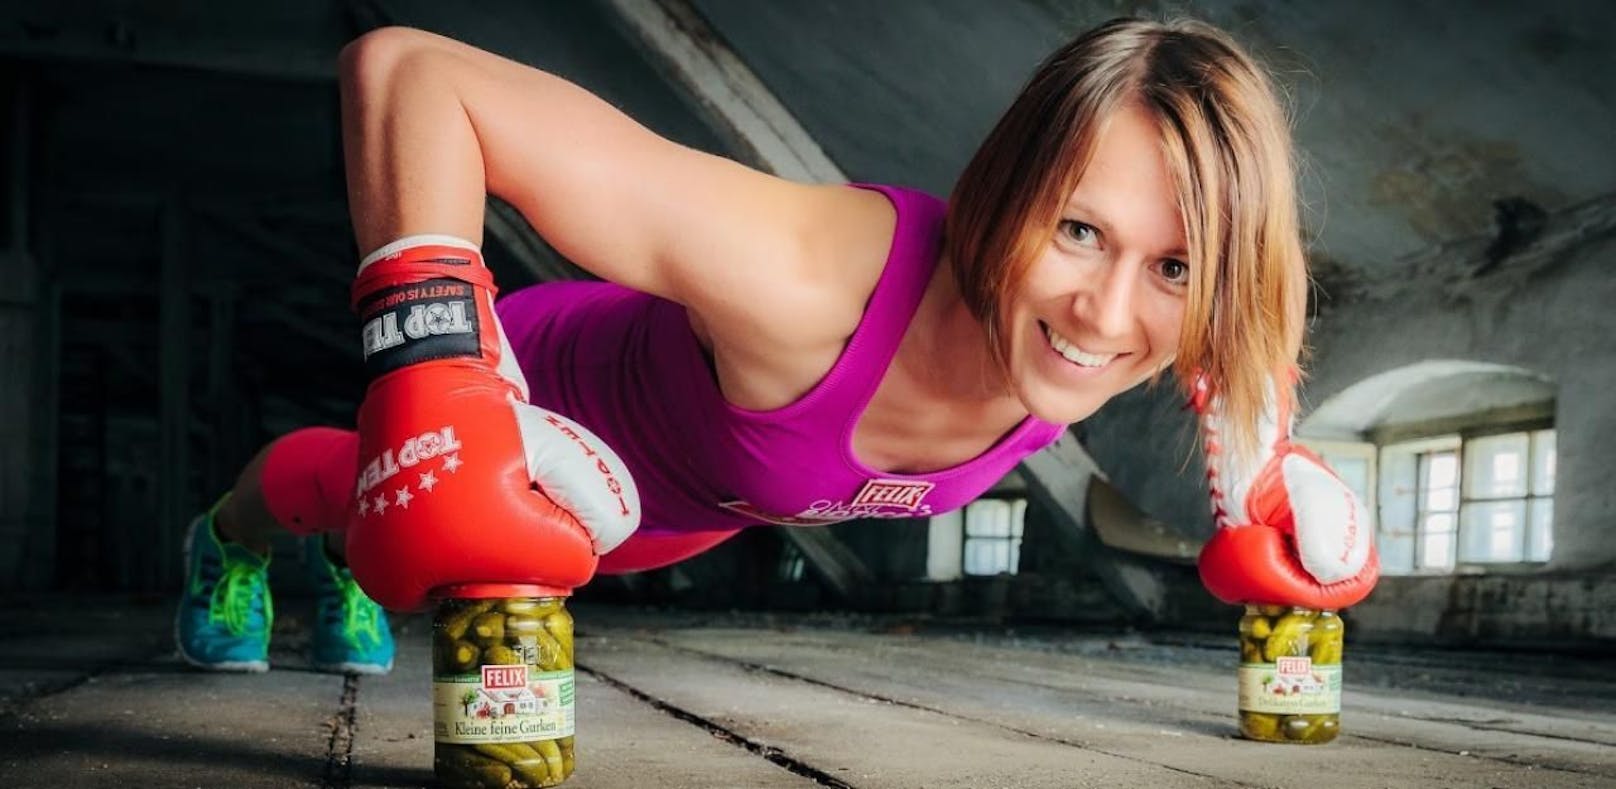 Kickbox-Weltmeisterin: "Jeder hat ein Sixpack!"